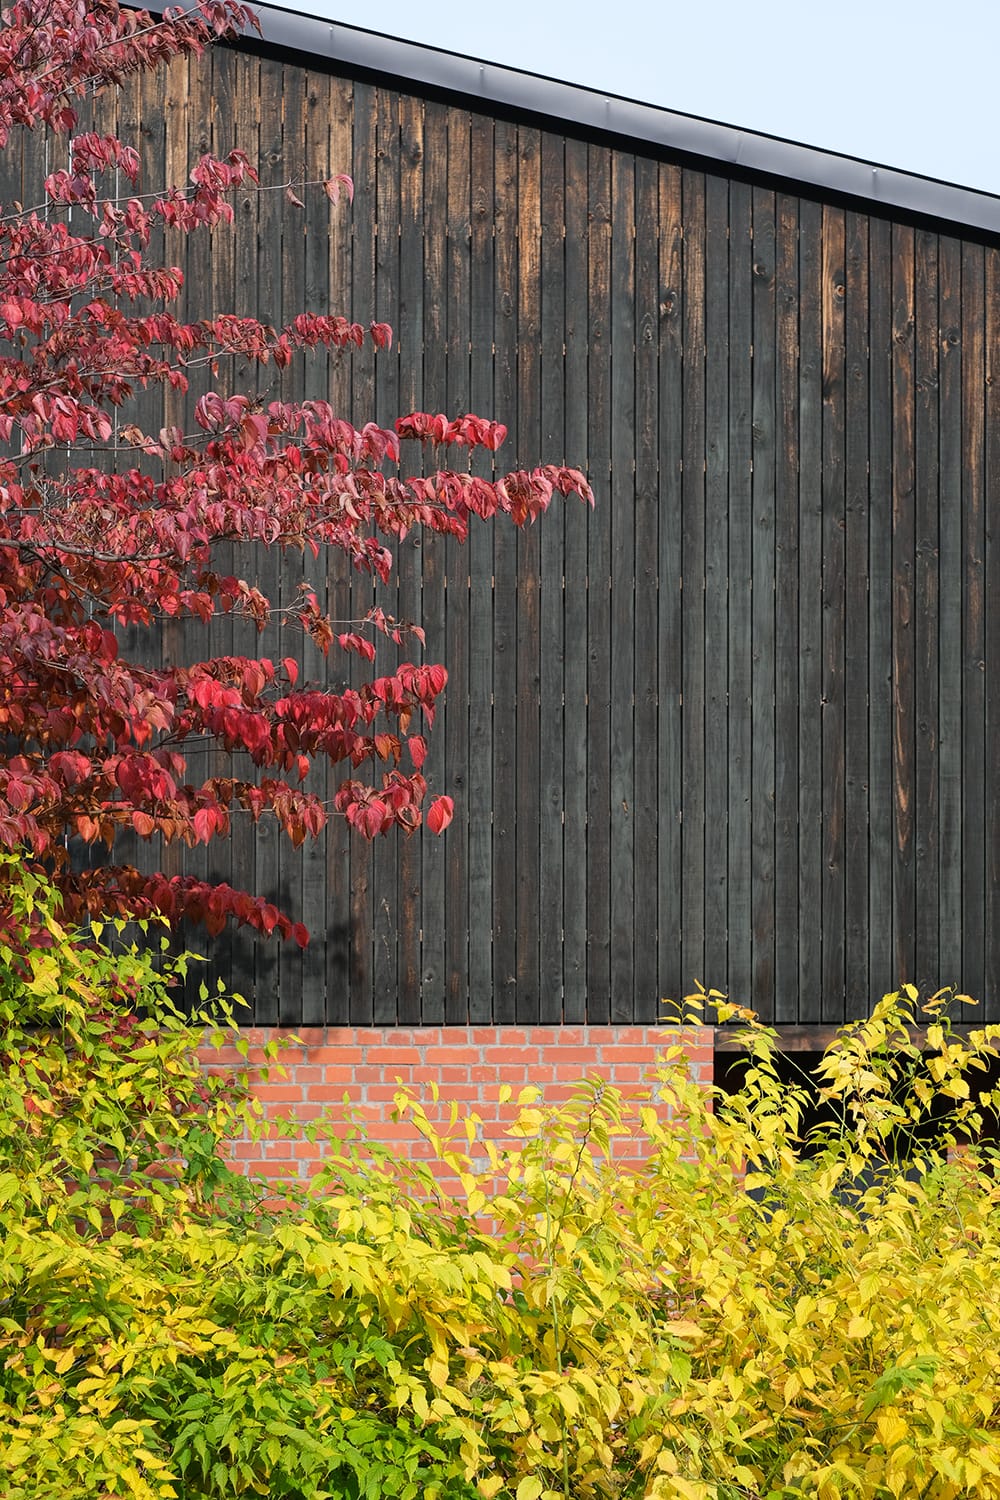 ヤマボウシの紅葉とヤマブキの黄葉と黒い板壁と赤いレンガ壁